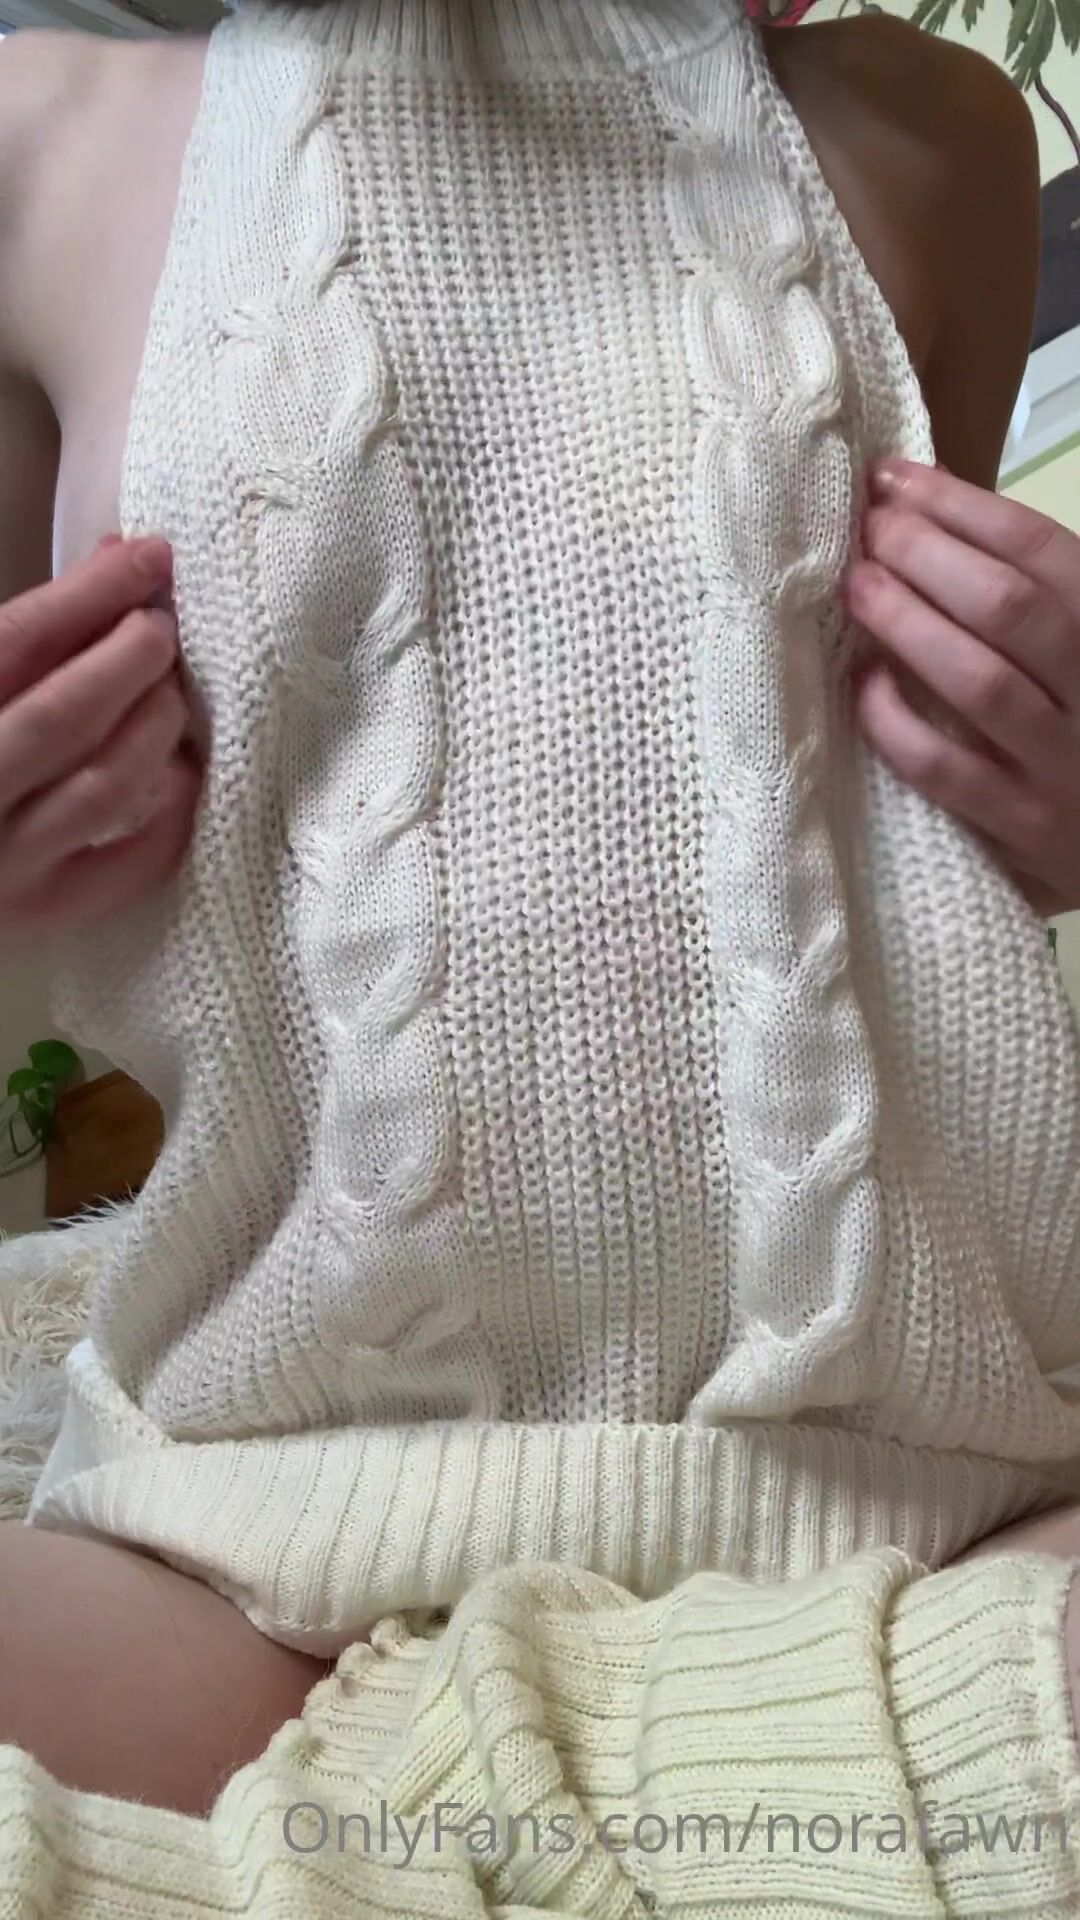 Norafawn Virgin Killers Sweater Tease